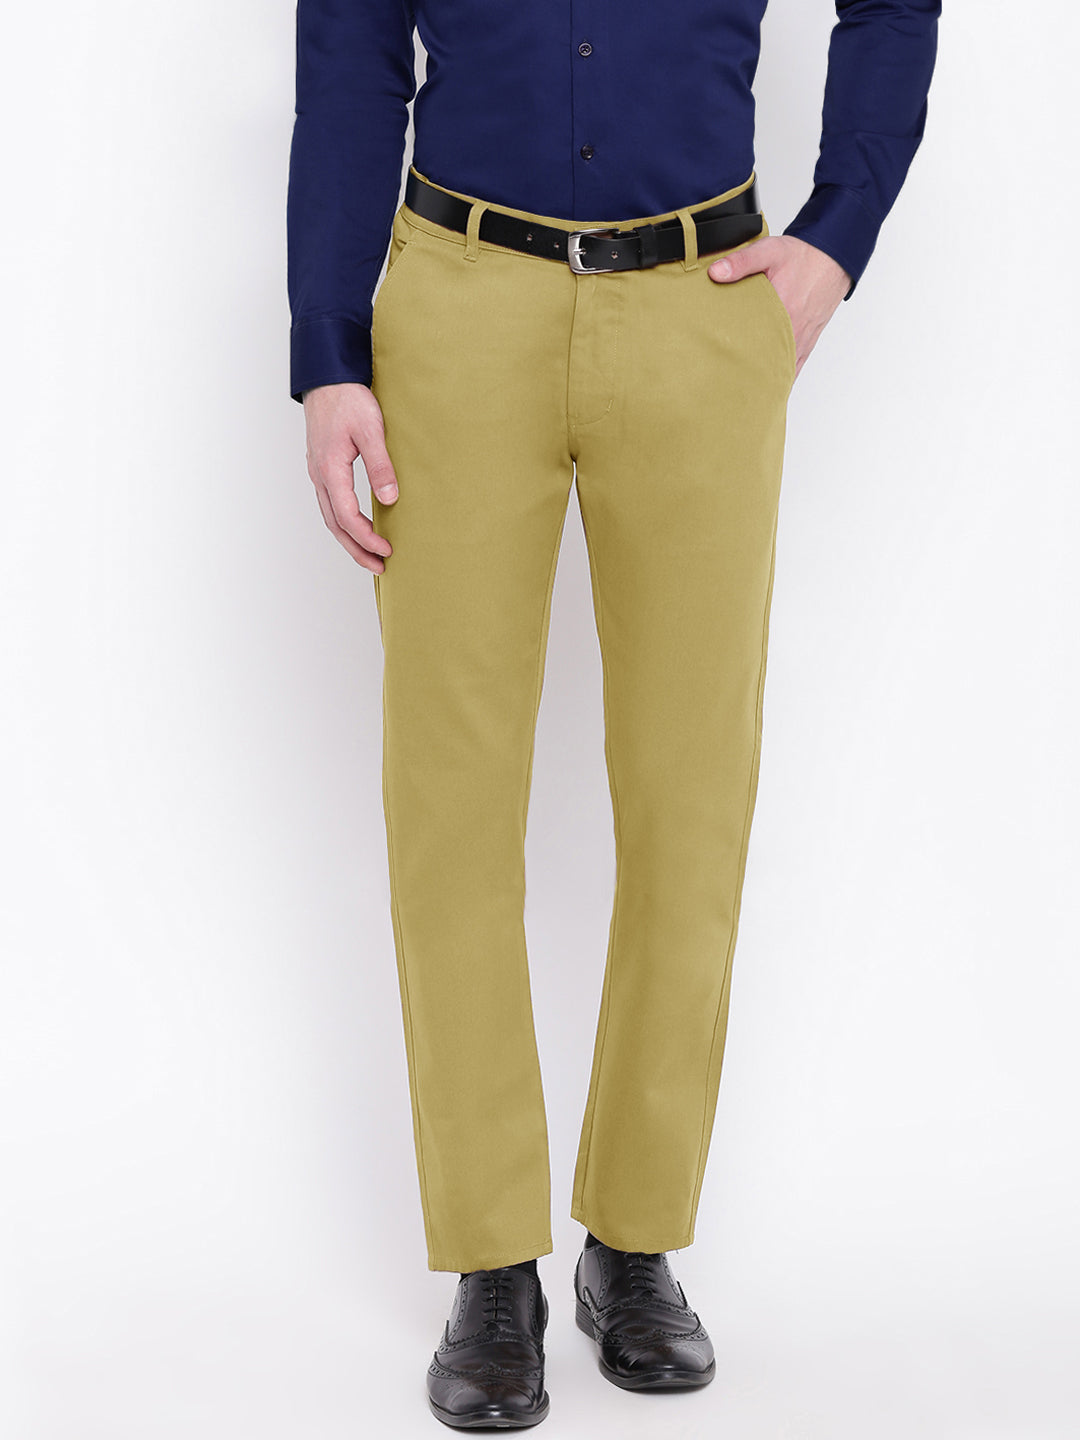 MEN, Bottom Wear, Casual Trousers | Xxllent Men's Casual Trouser